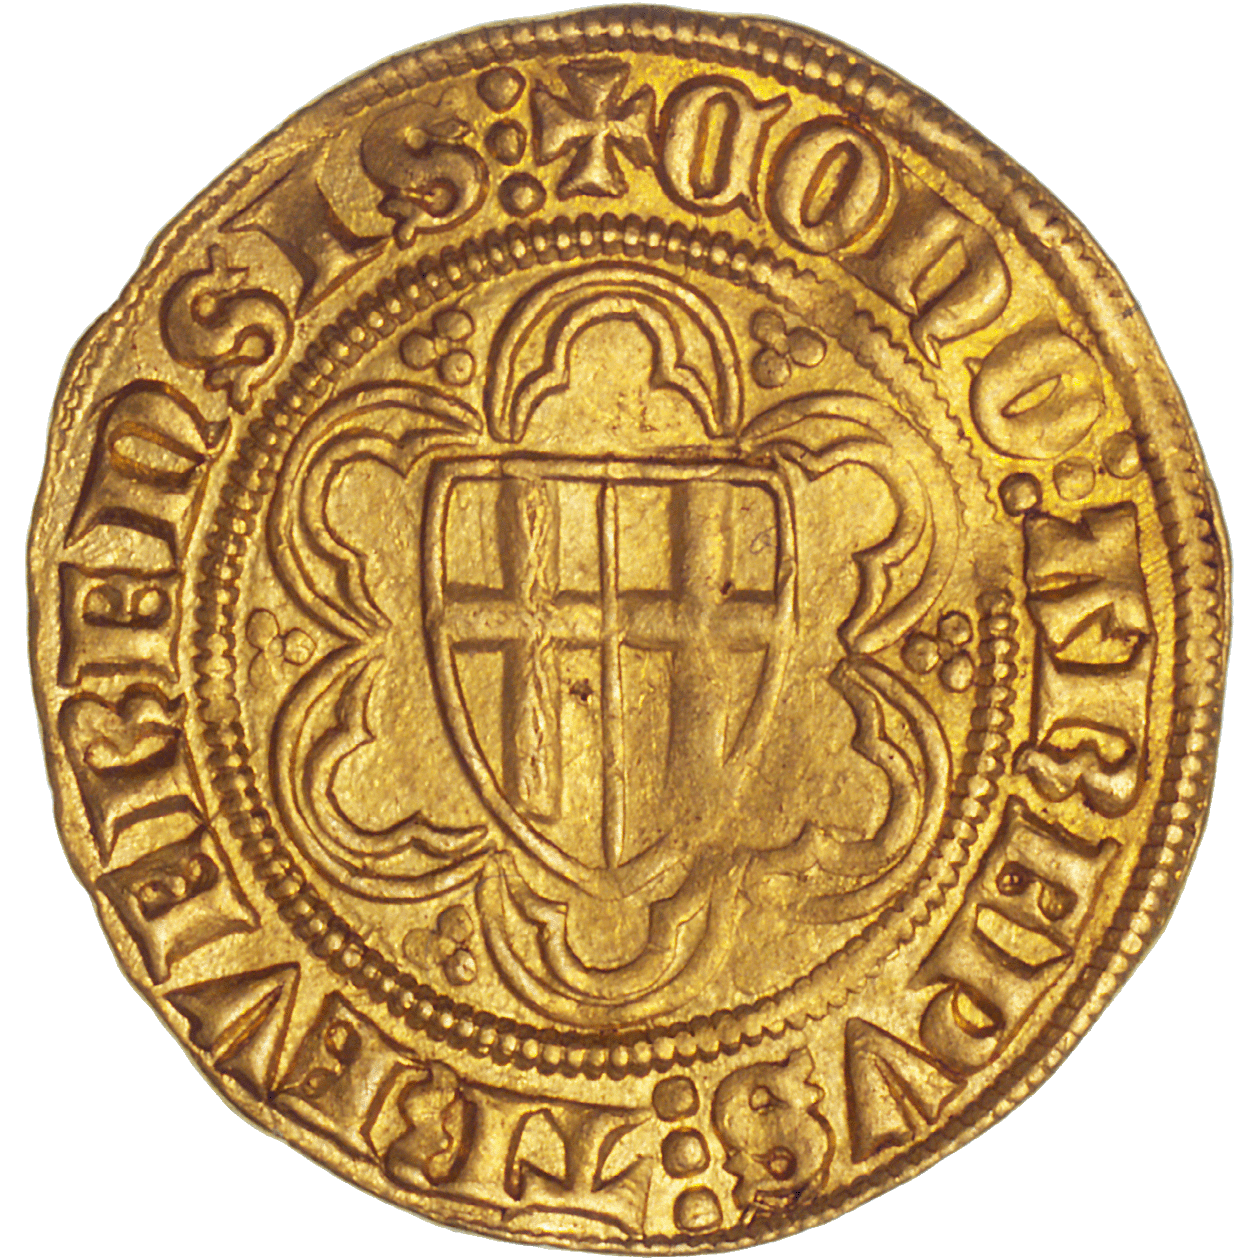 Heiliges Römisches Reich, Bistum Trier, Kuno II. von Falkenstein zu Minzenberg, Goldgulden (obverse)